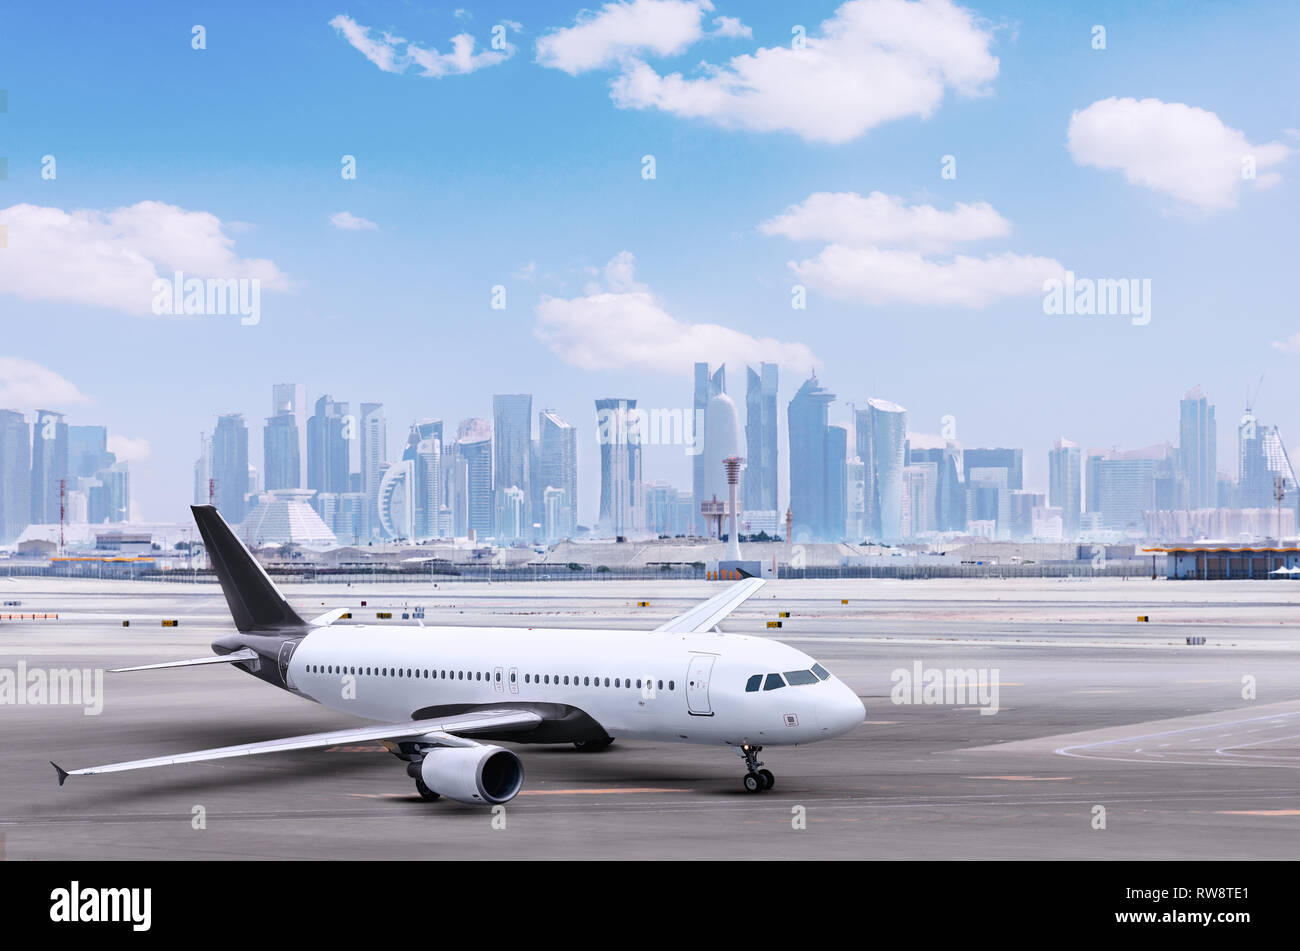 Flugzeug am Flughafen Doha, Stadtbild mit Blick auf die Hochhäuser im Hintergrund. Ebene mit Gebäude, Flugzeuge und Städte, Logistik. Stockfoto